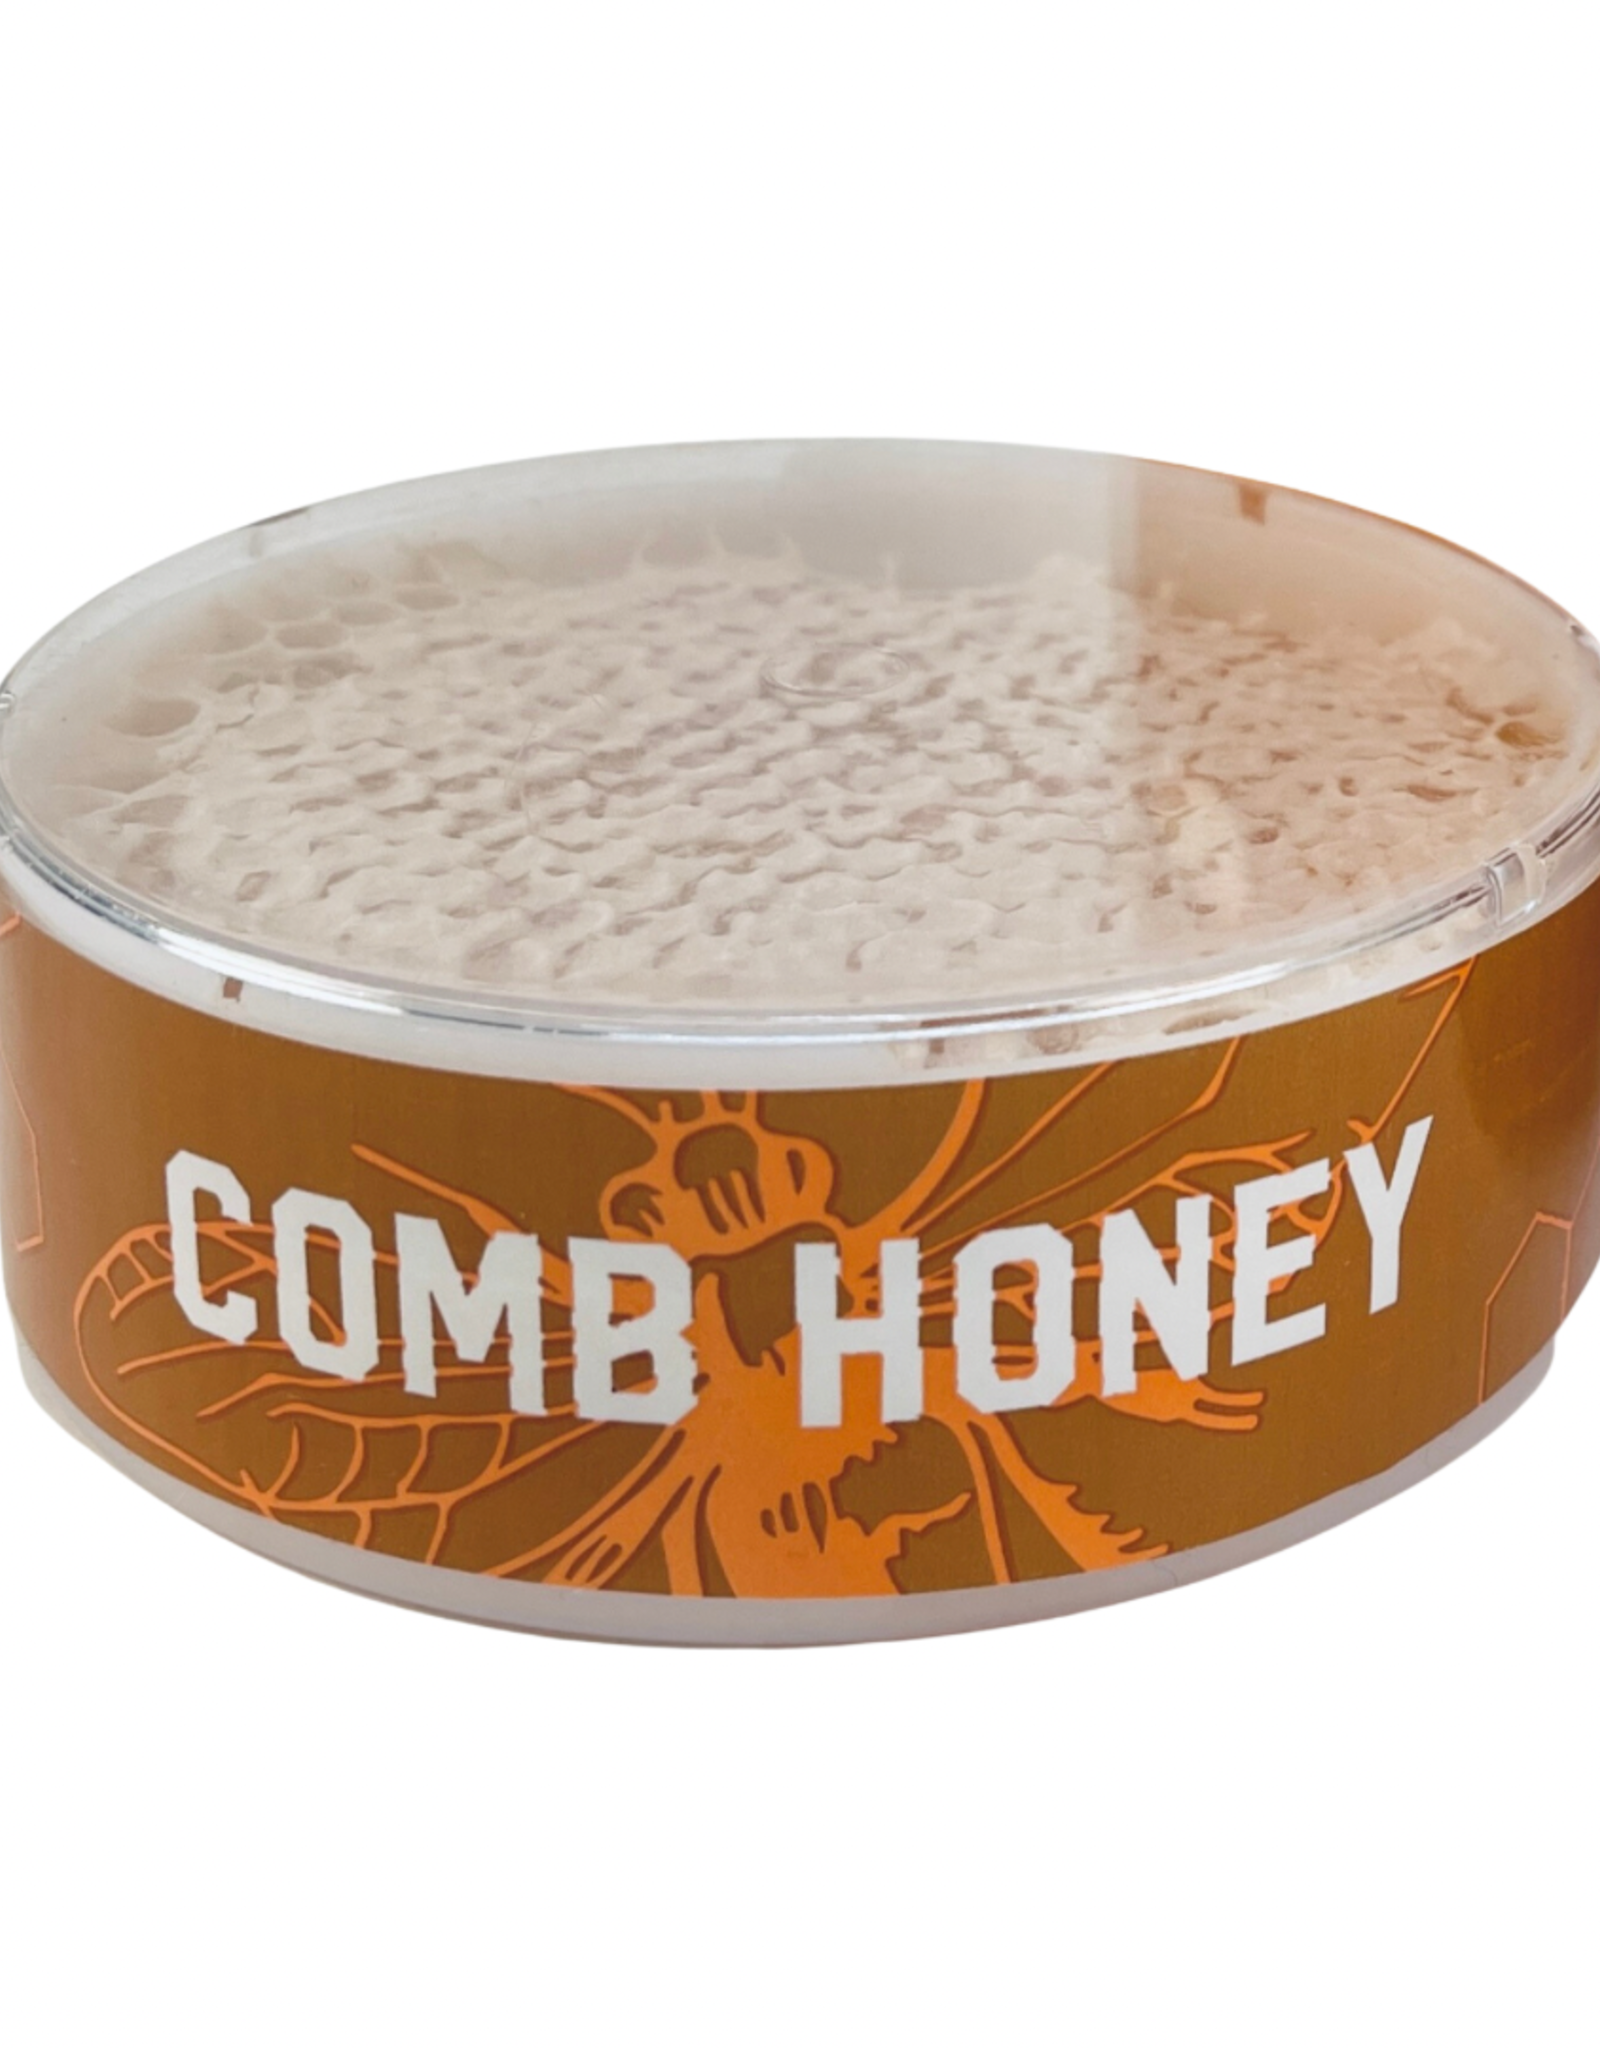 Consignment Honey Comb